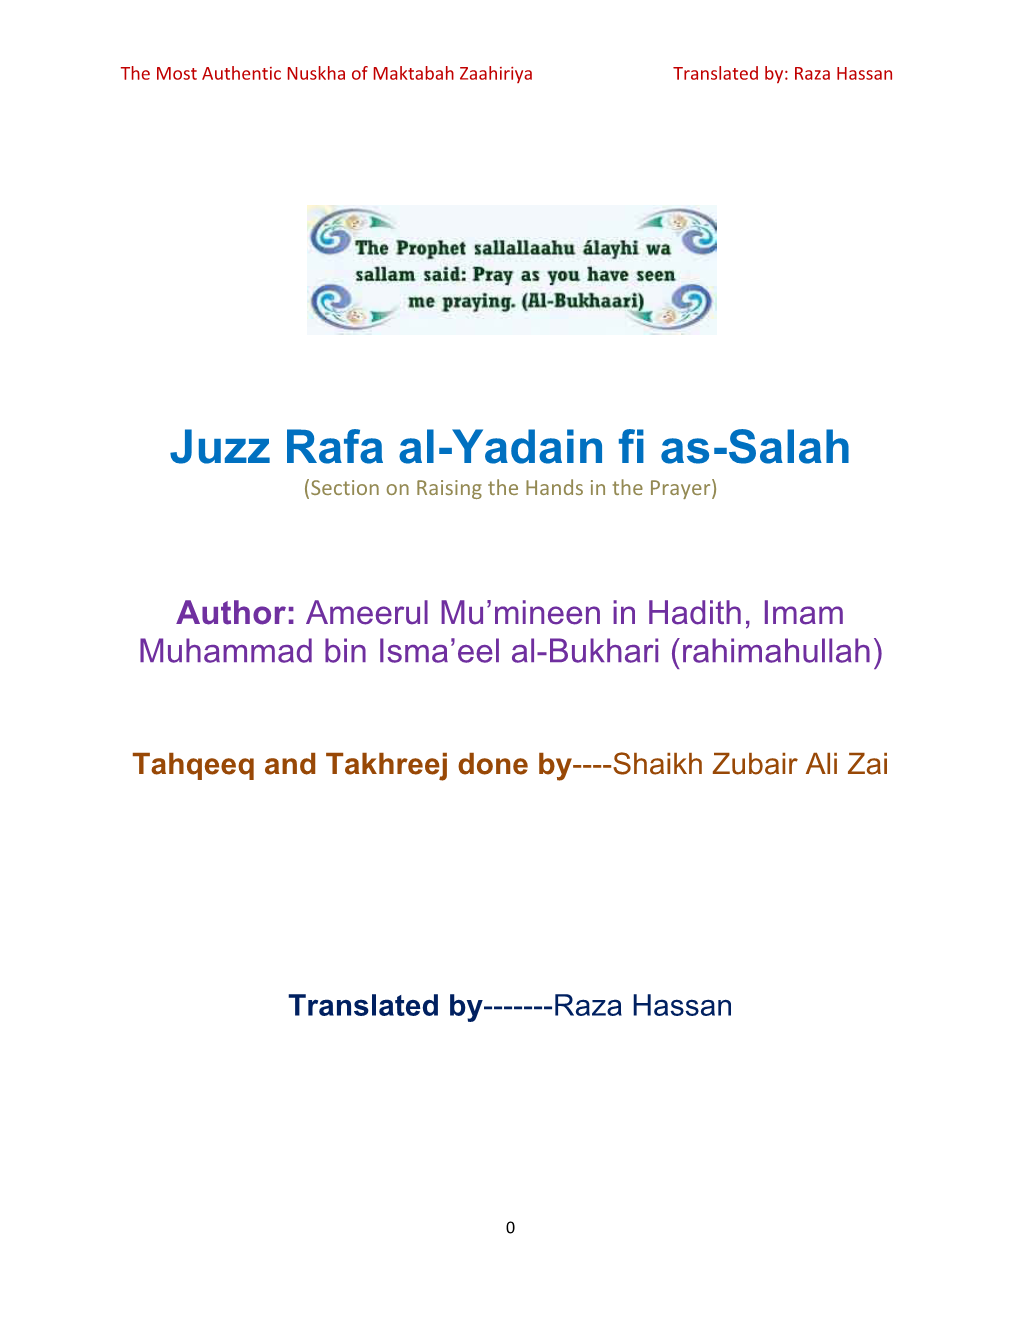 Juzz Rafa Al-Yadain Fi As-Salah (Section on Raising the Hands in the Prayer)